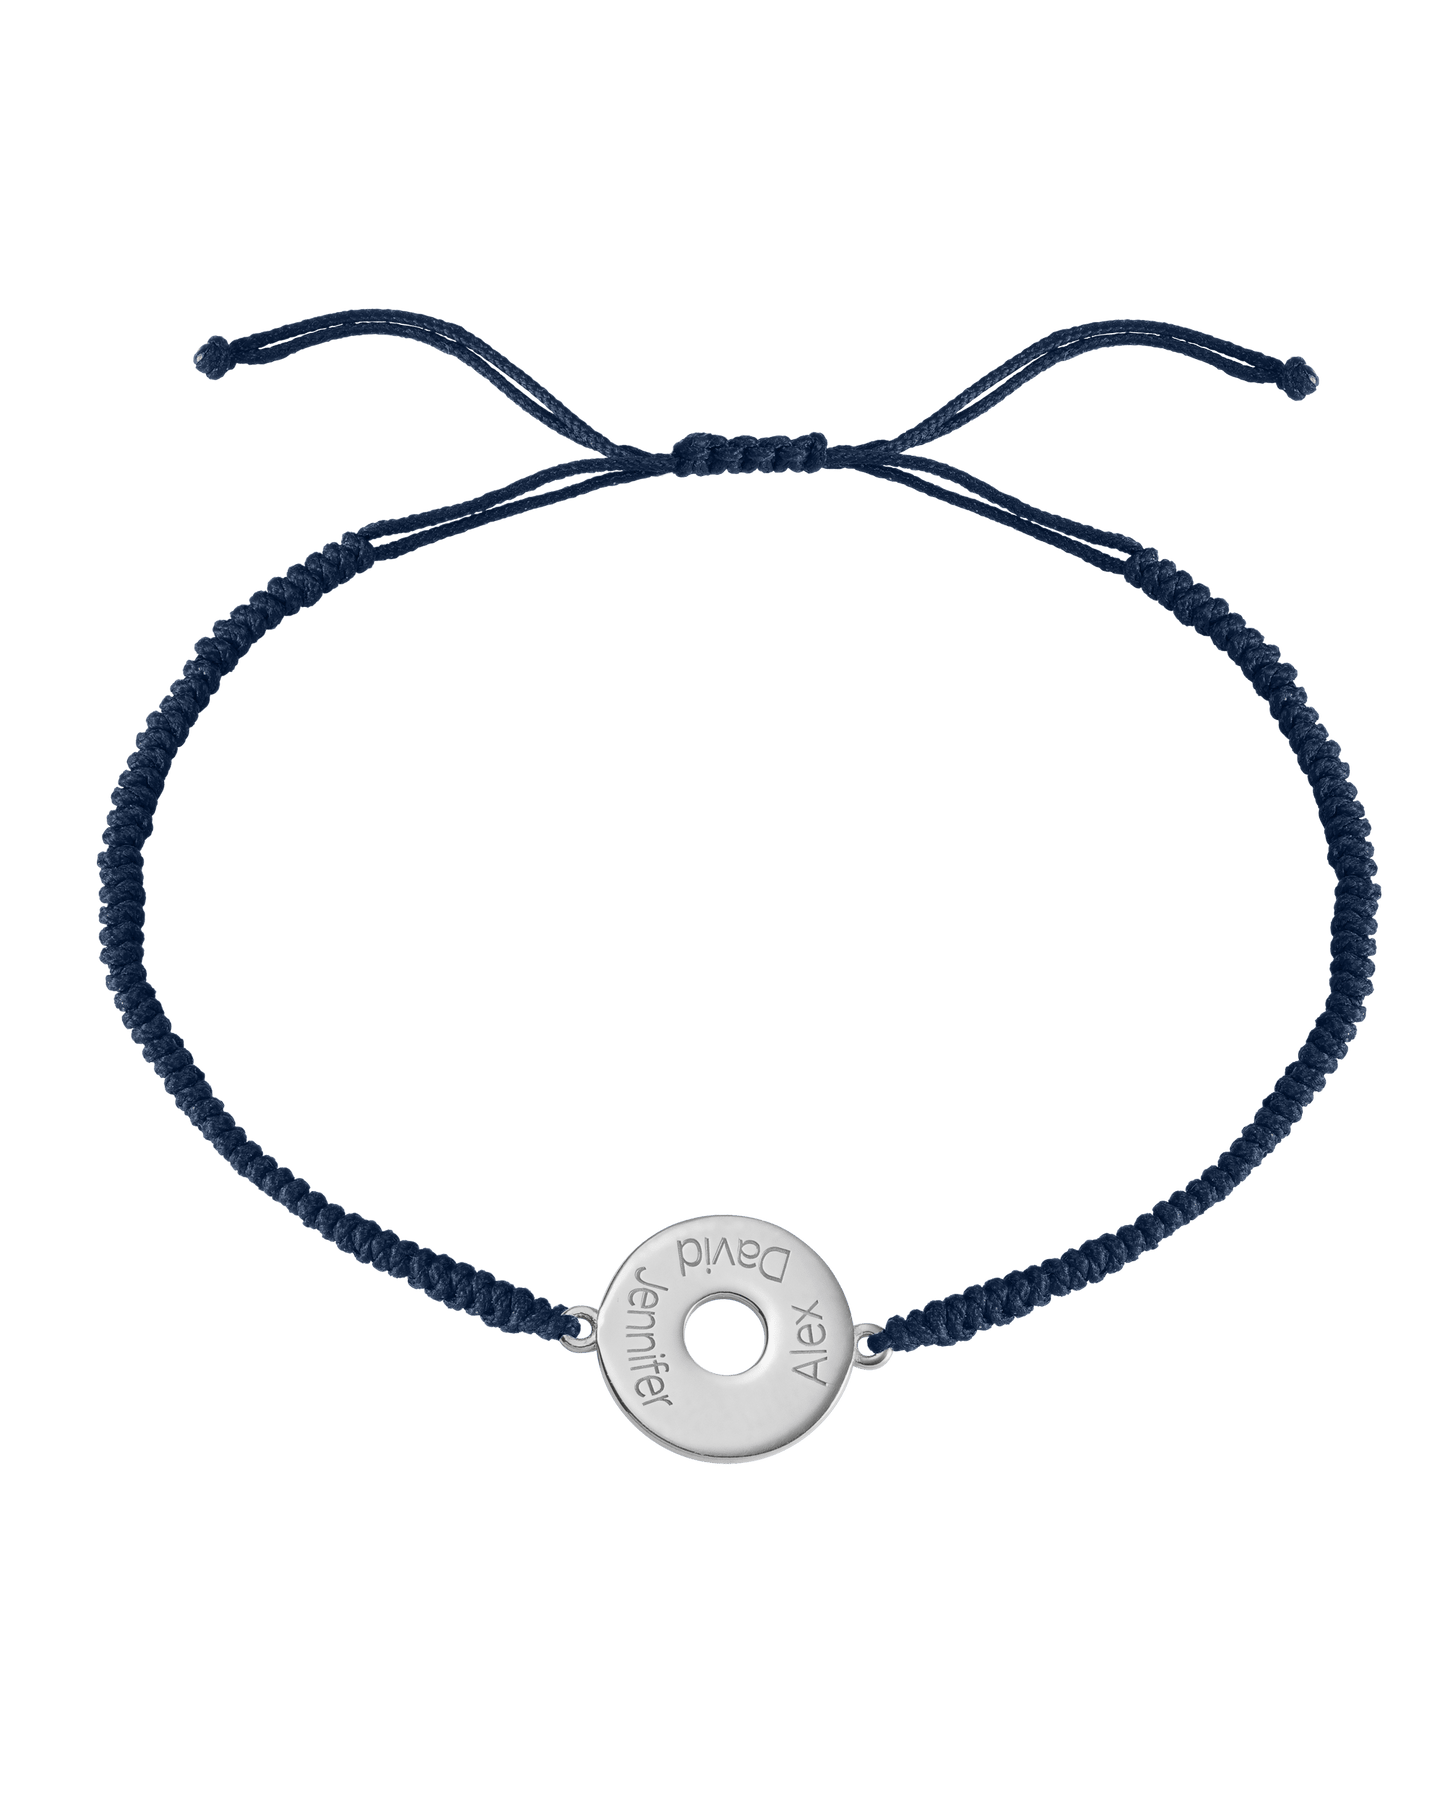 Donut Cord Bracelet - 925 Sterling Silver Bracelets magal-dev Navy Blue 1 Names Adjustable from 4" to 9"